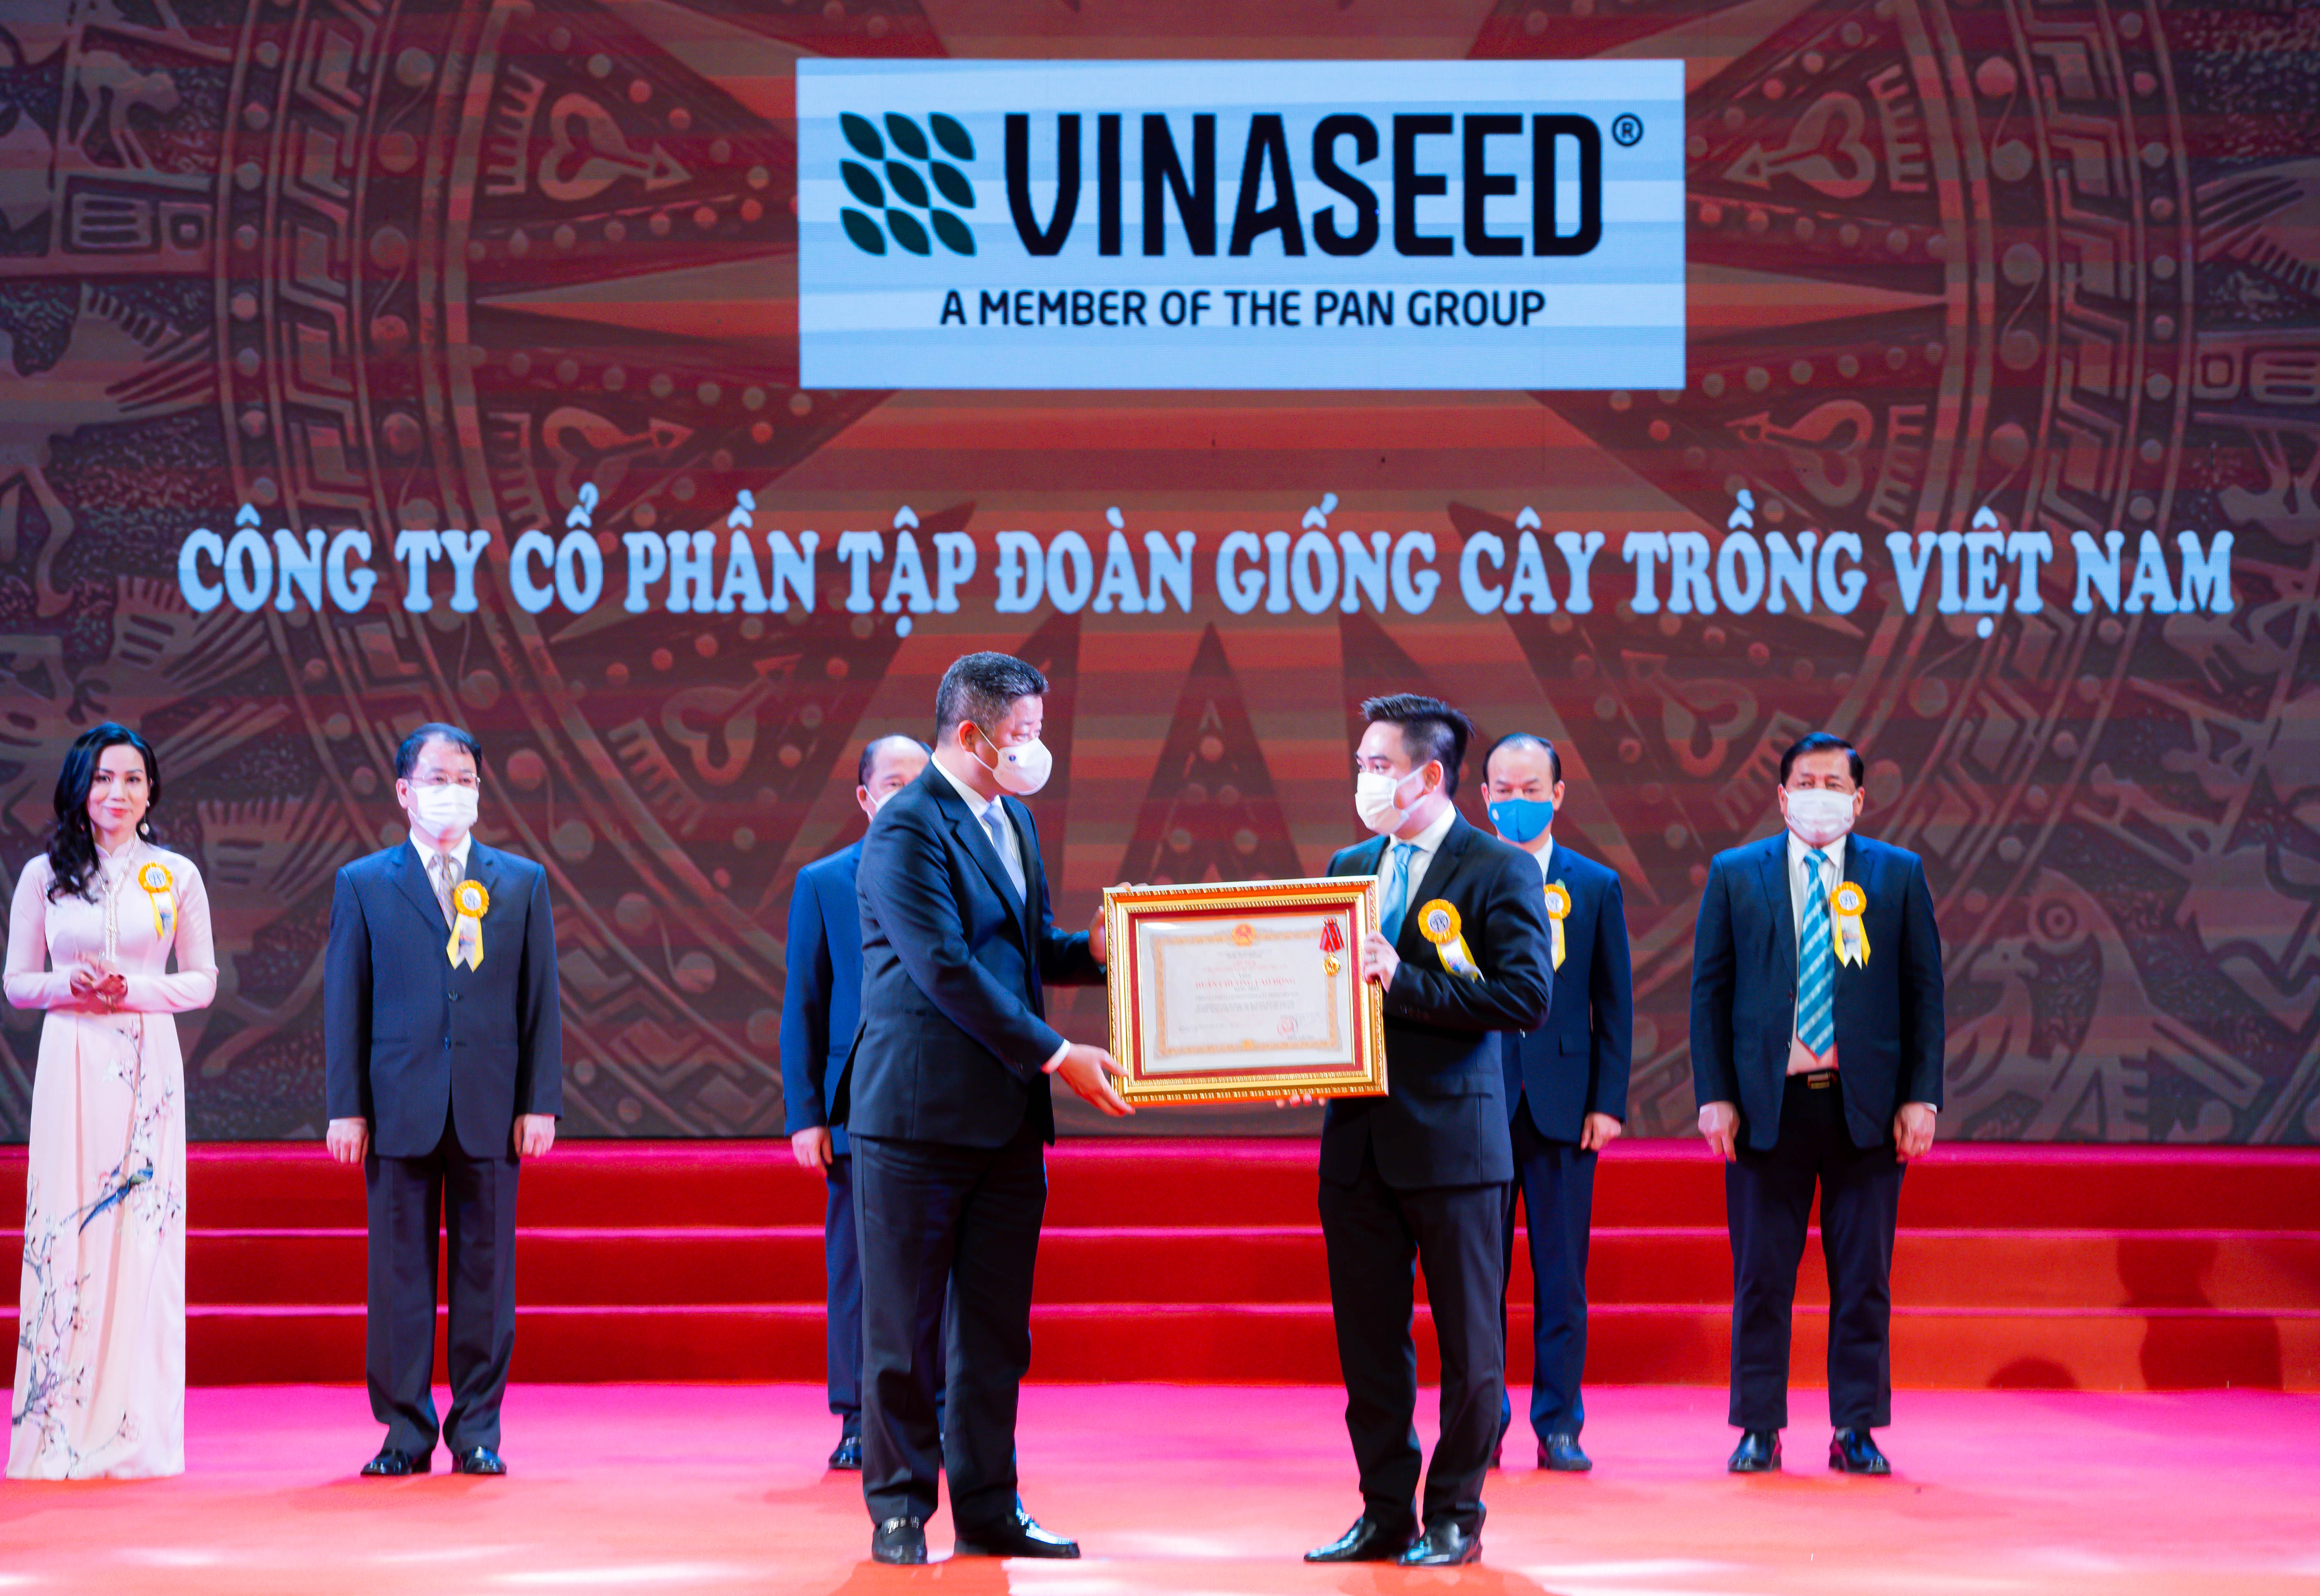 Công ty Cổ phần Tập đoàn Giống cây trồng Việt Nam (Vinaseed) nhận Huân chương Lao động hạng Nhất của Chủ tịch nước.